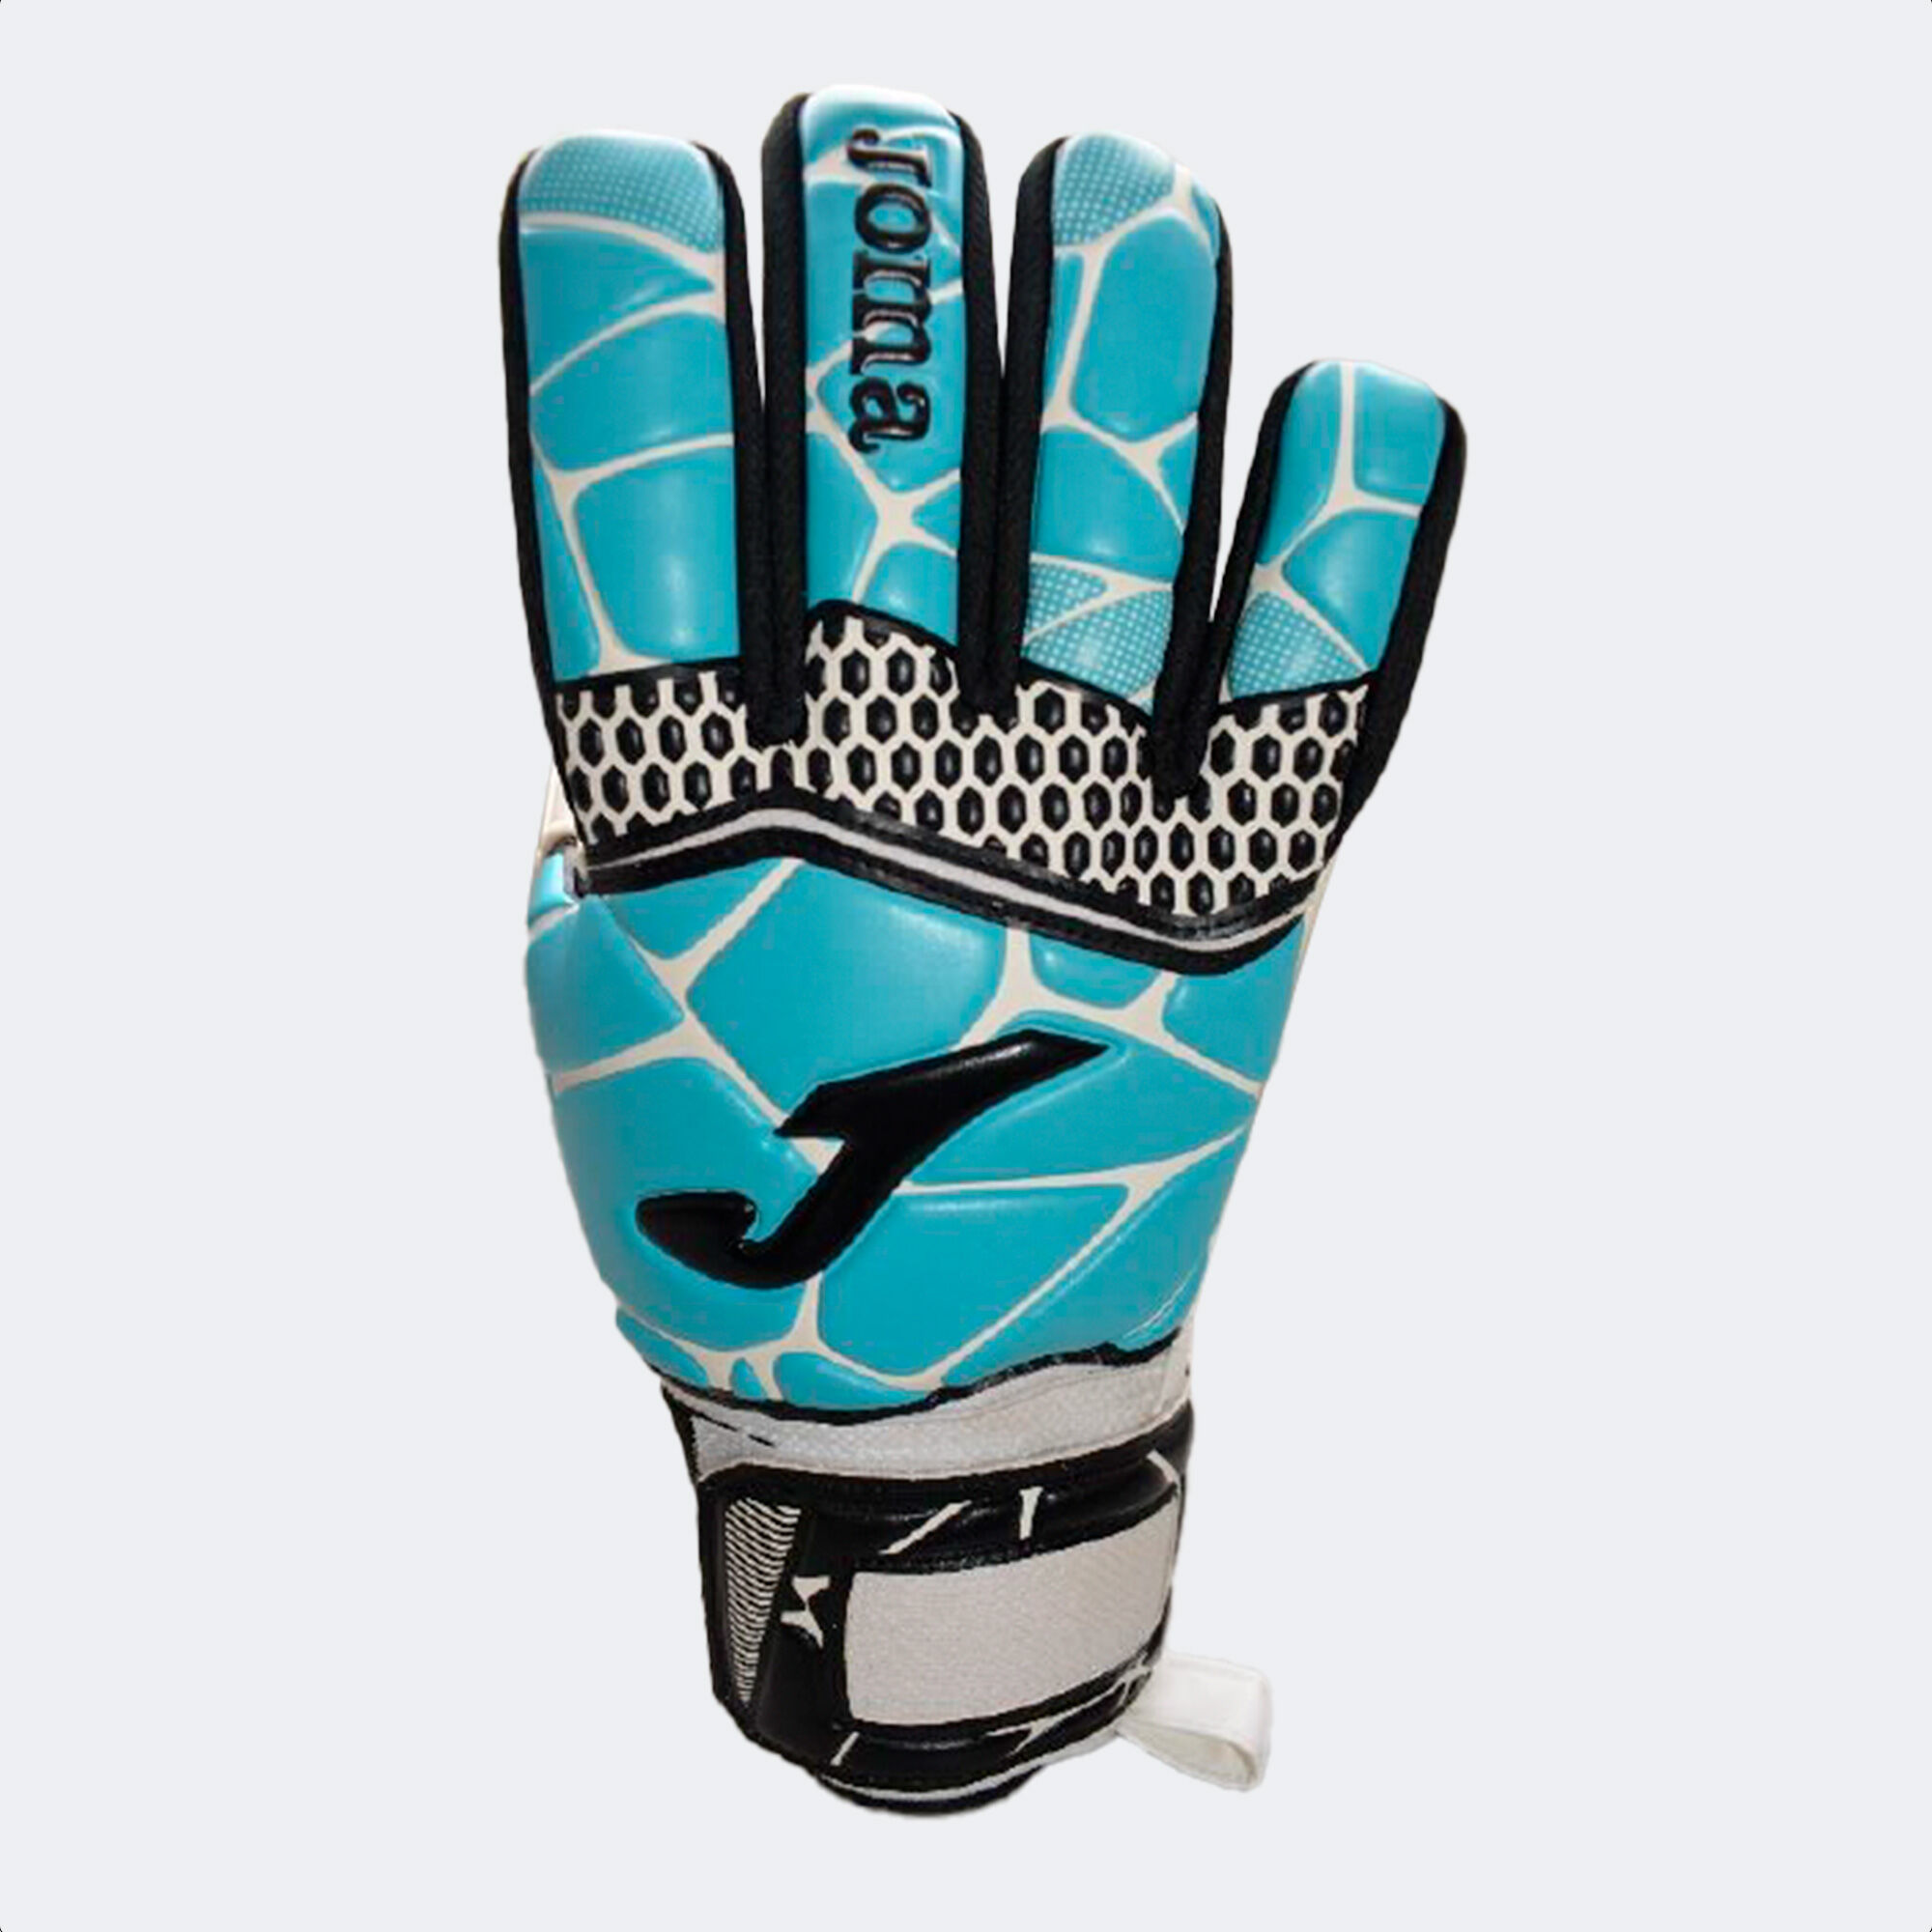 Football goalkeeper gloves Gk-Pro white turquoise